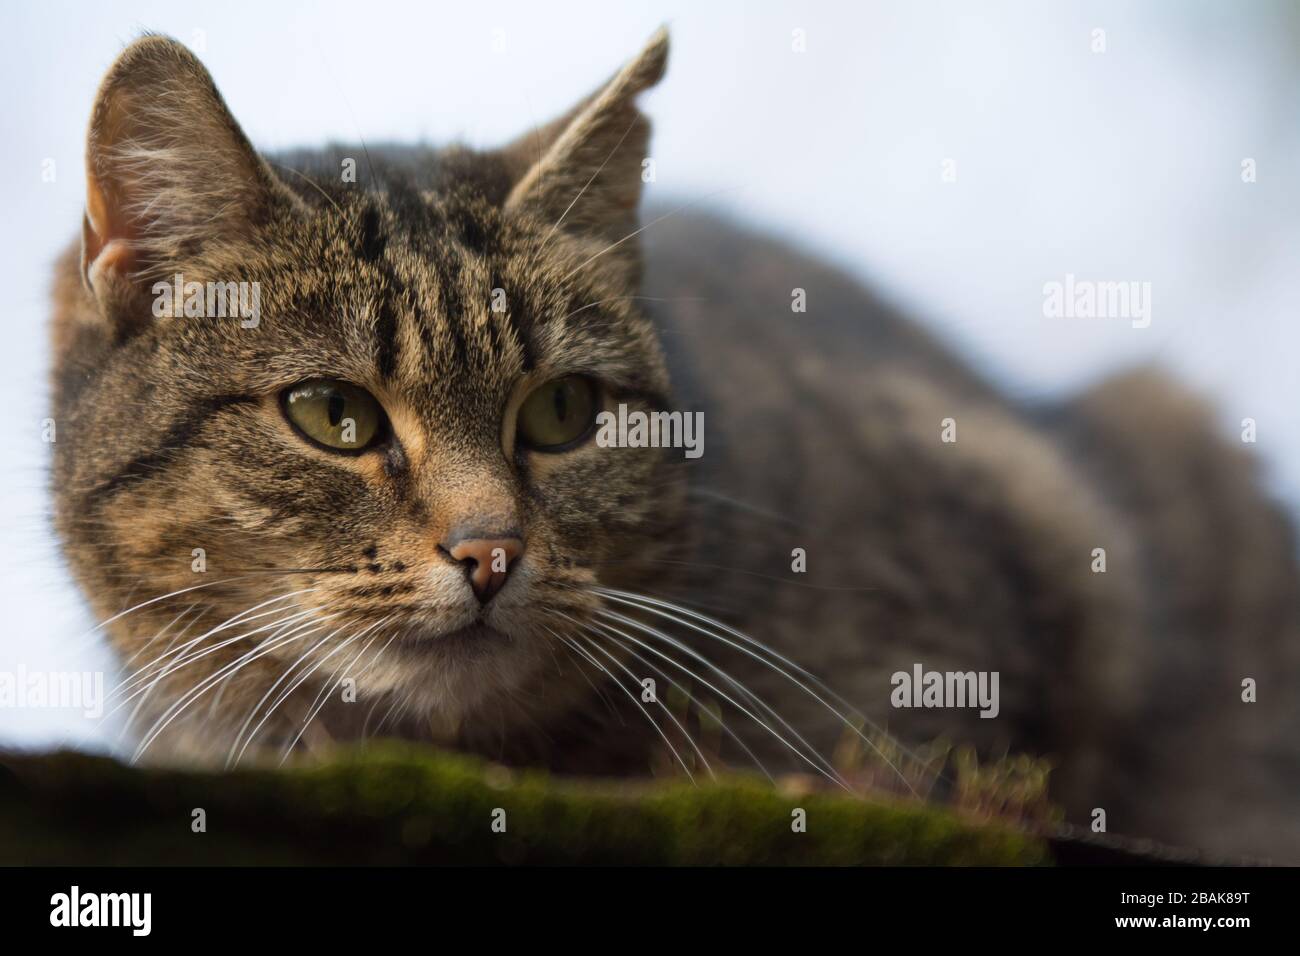 Nahaufnahme einer besprühten Tabby-Katze mit einer einschneidig wirkenden Narbe auf dem Ohr, die nach rechts blickt - Kopierraum Stockfoto